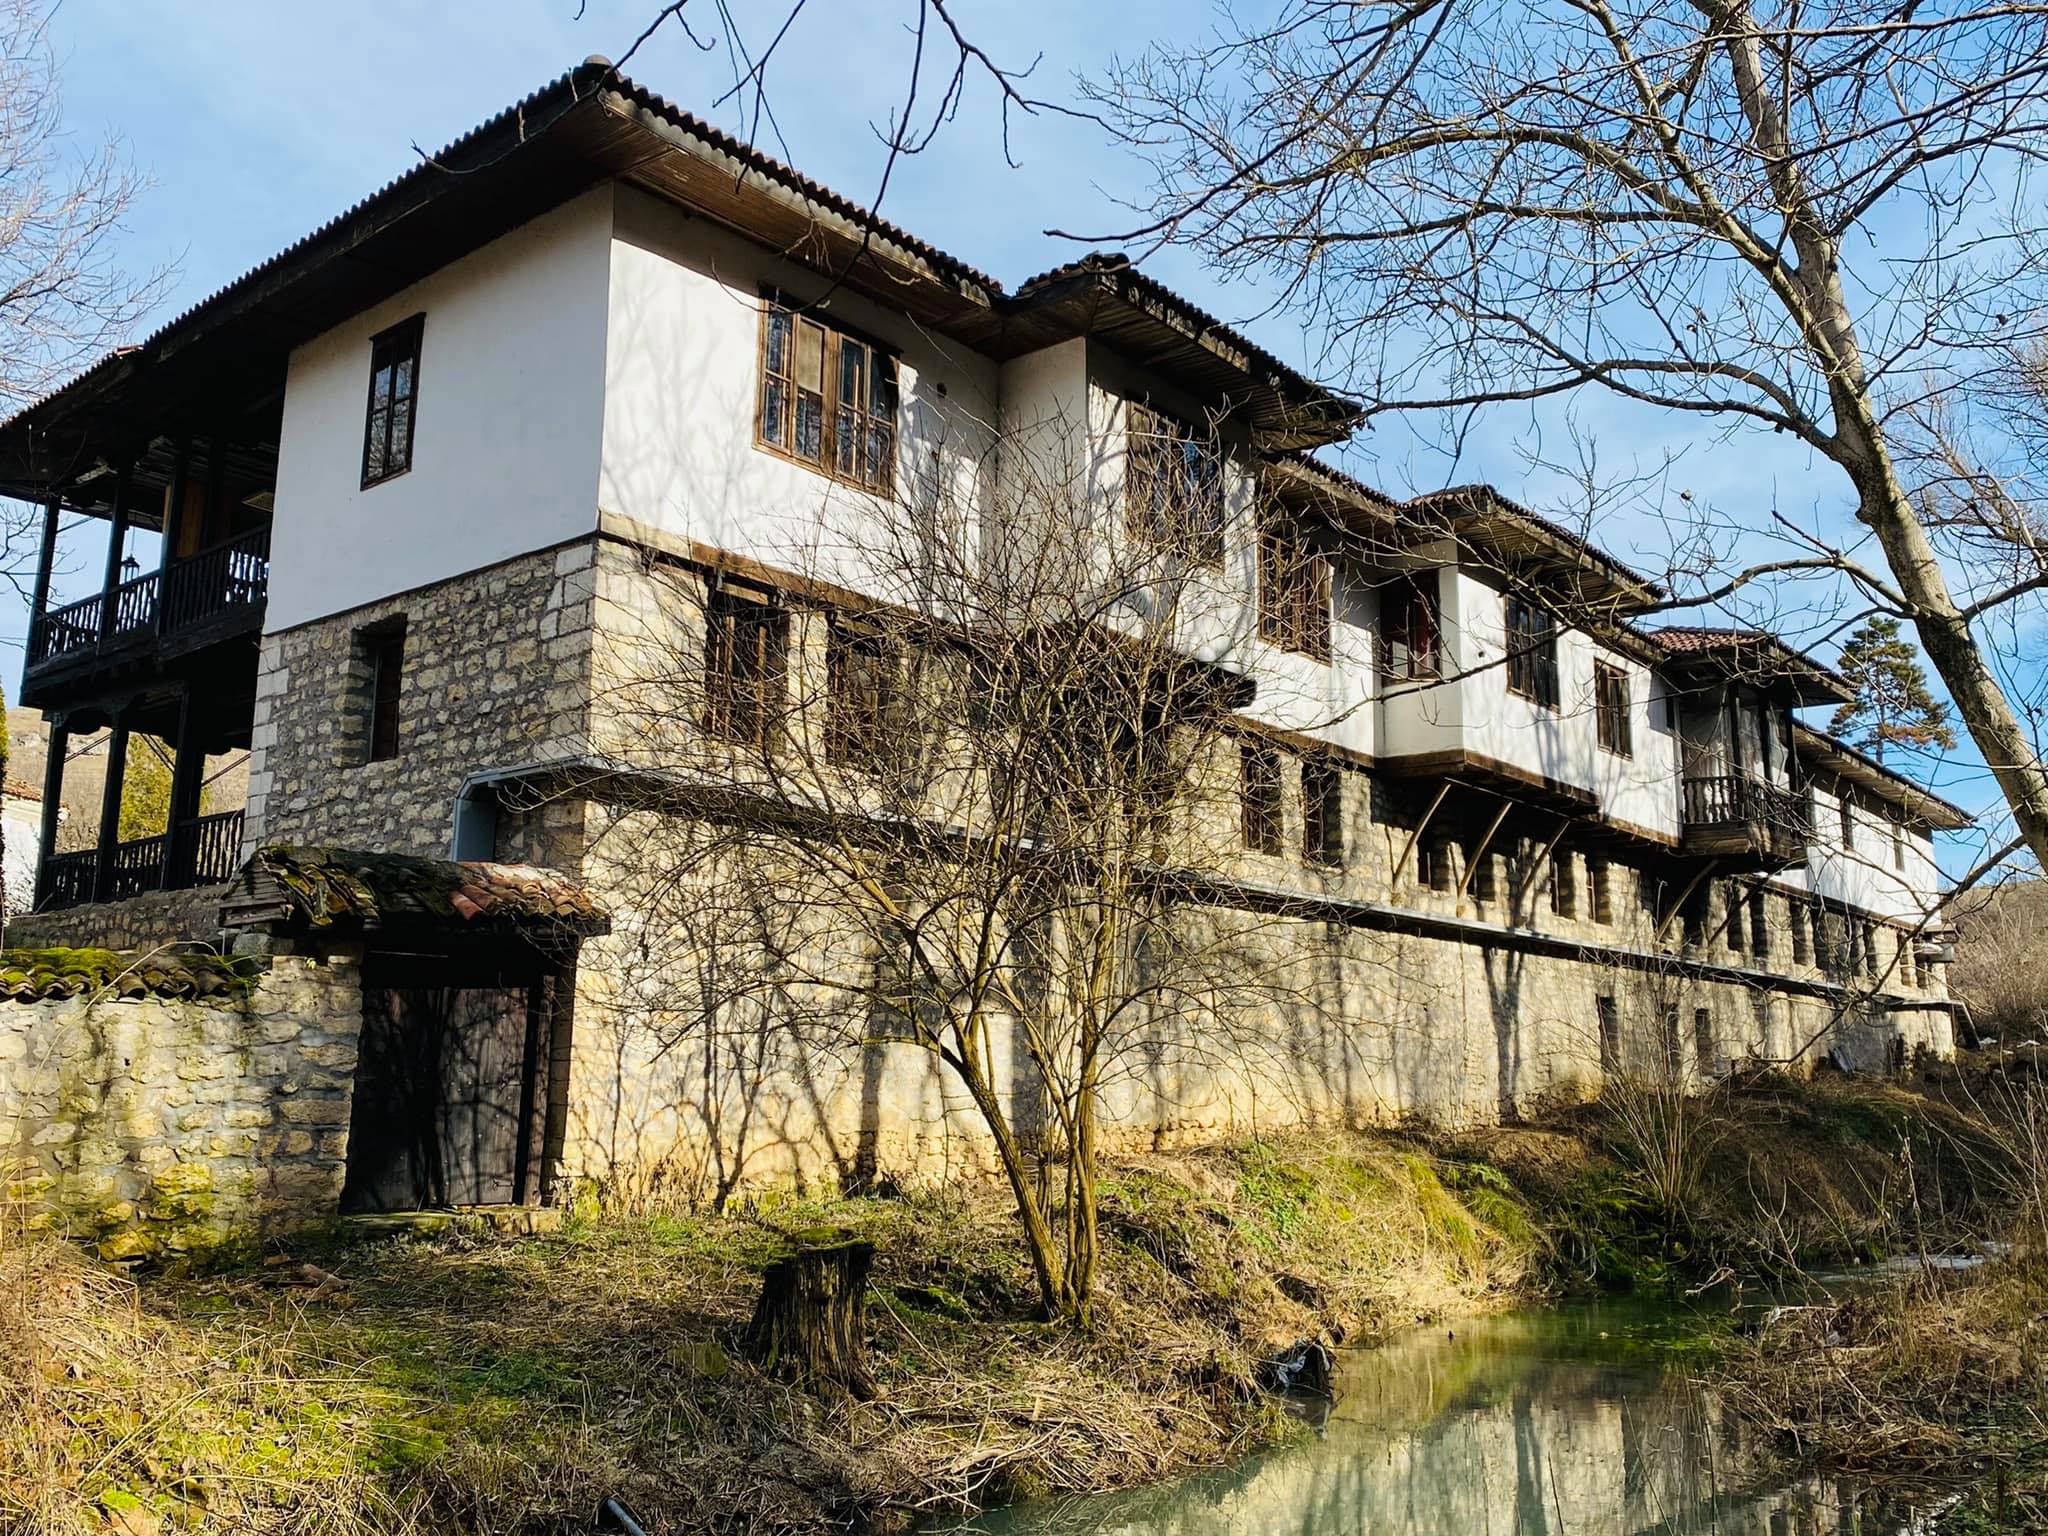 Градешкият манастир край Враца отново приема поклонници